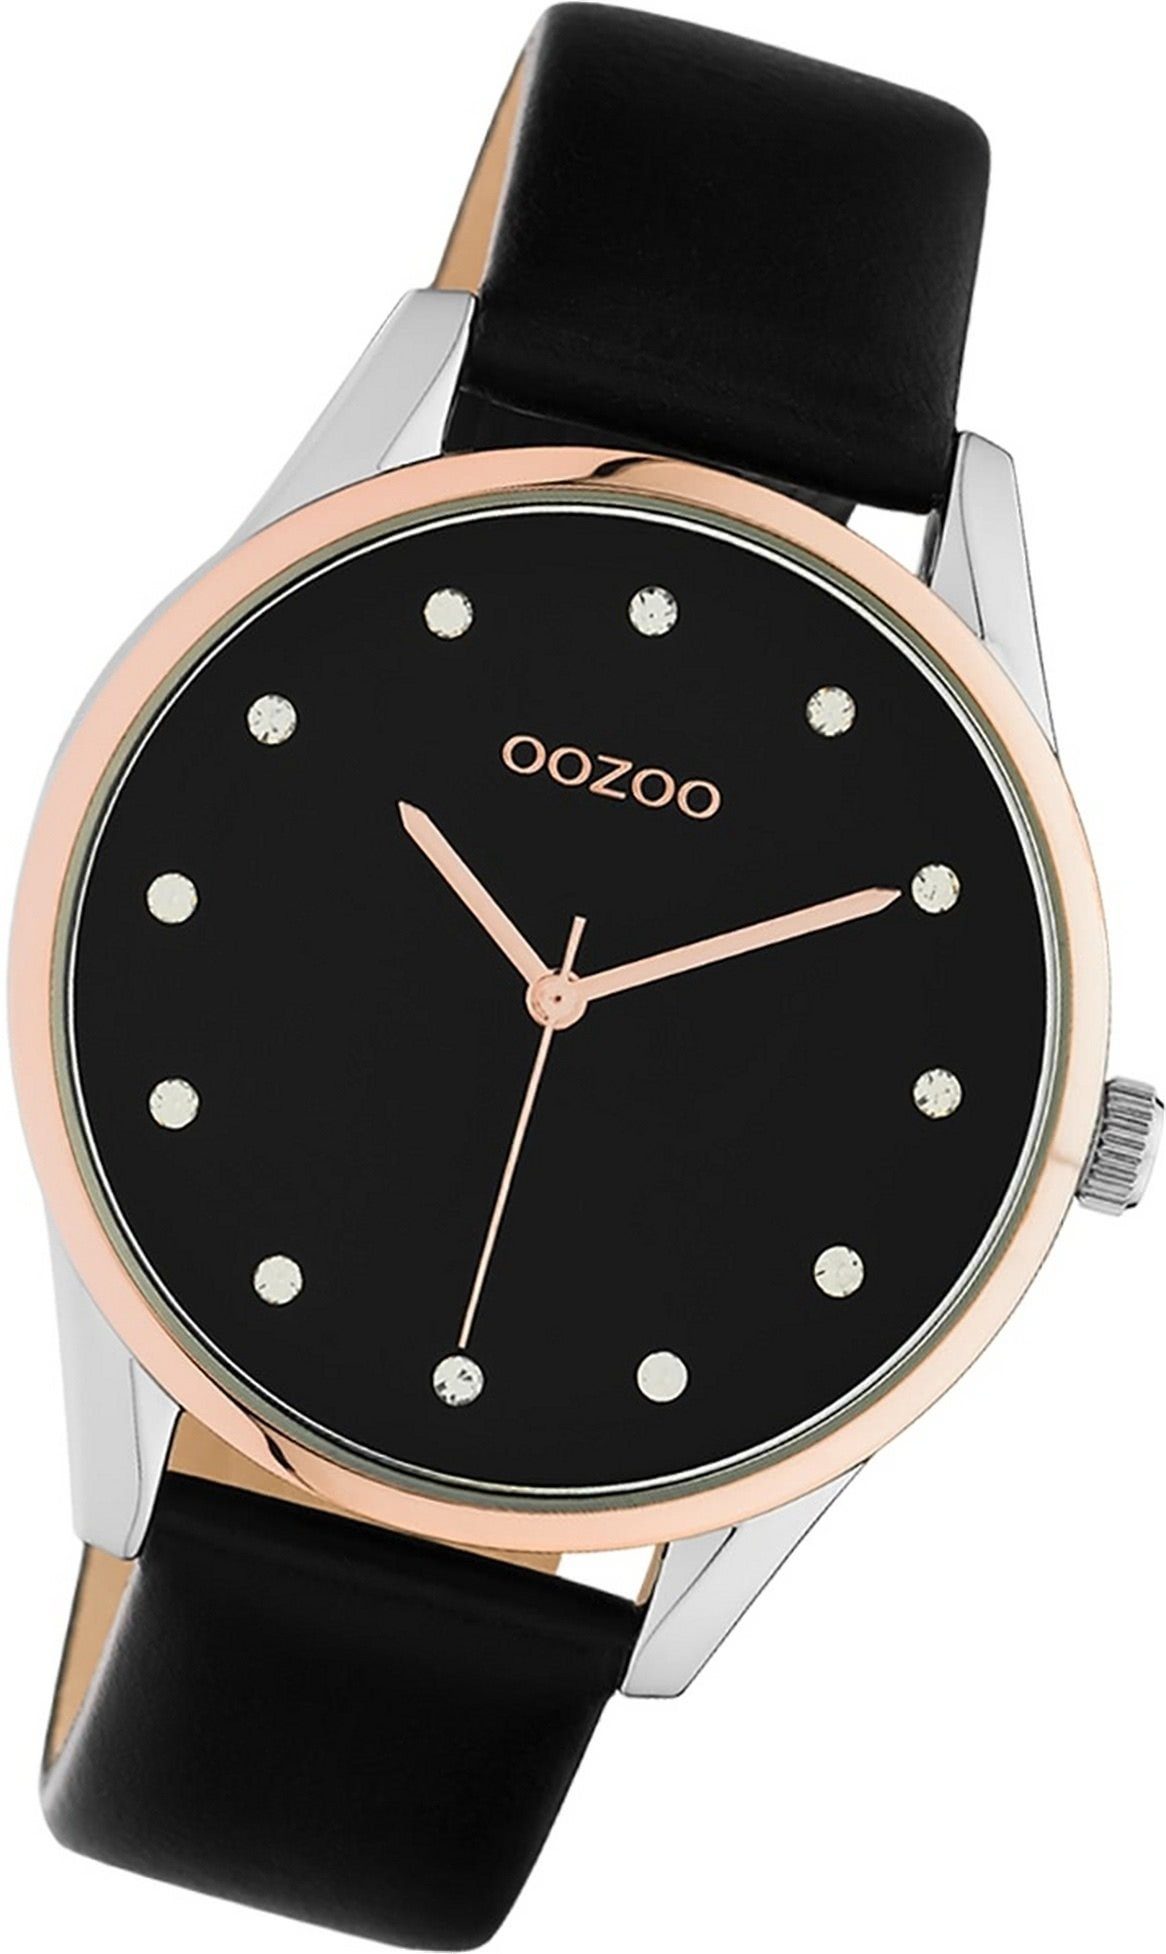 OOZOO Quarzuhr Oozoo rundes (ca. C10954 Gehäuse, Lederarmband Analog, Uhr schwarz, 40mm) Damen Damenuhr Leder groß